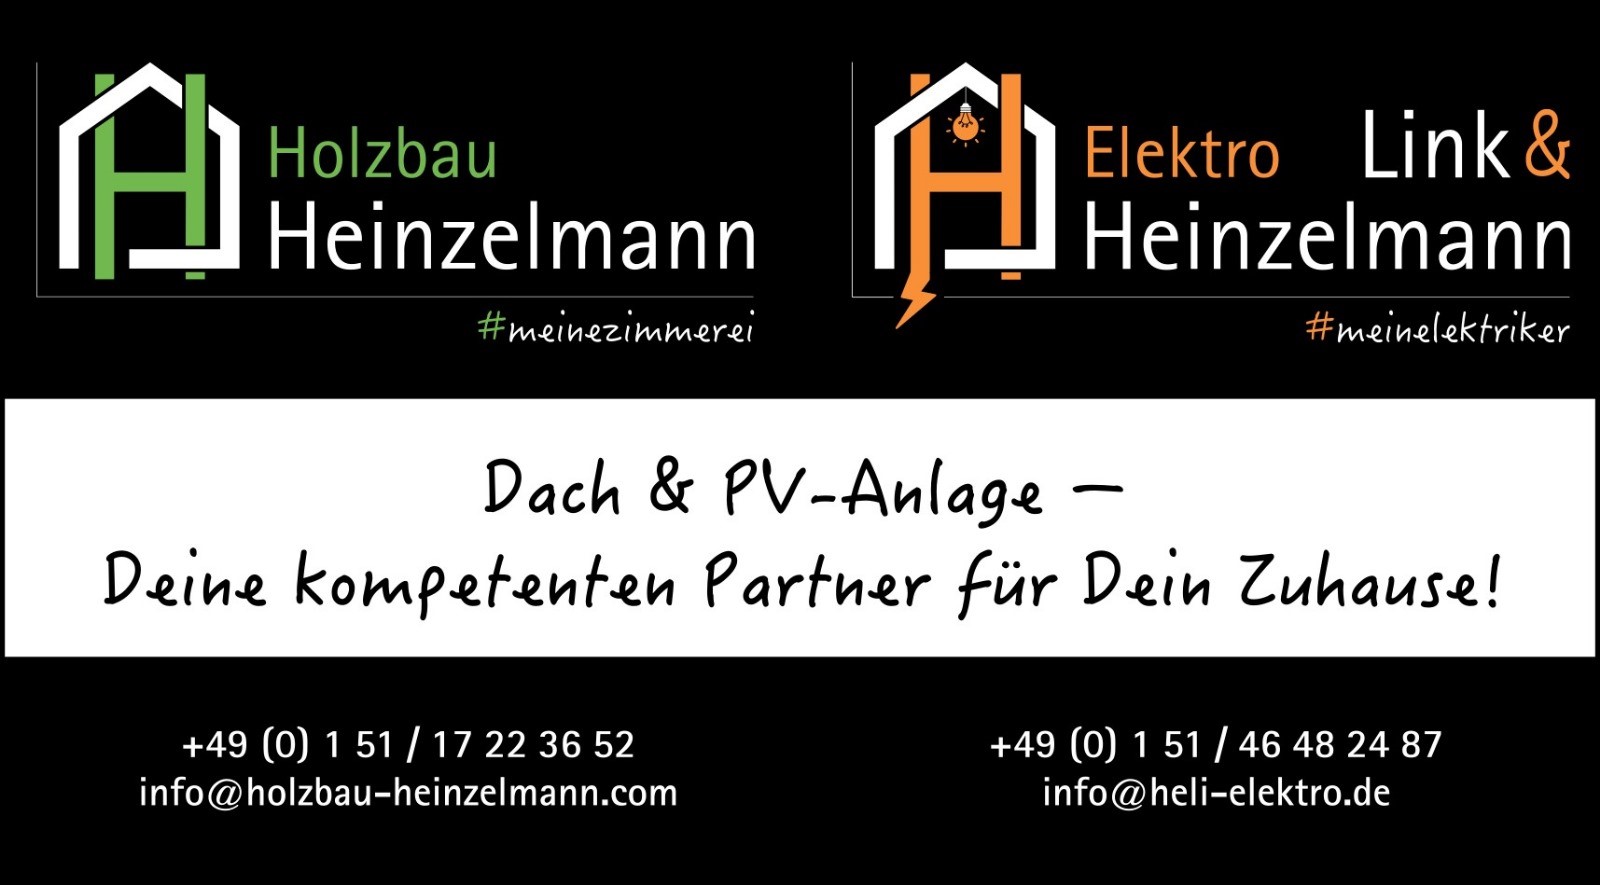 Holzbau Heinzelmann und Elektro Link & Heinzelmann